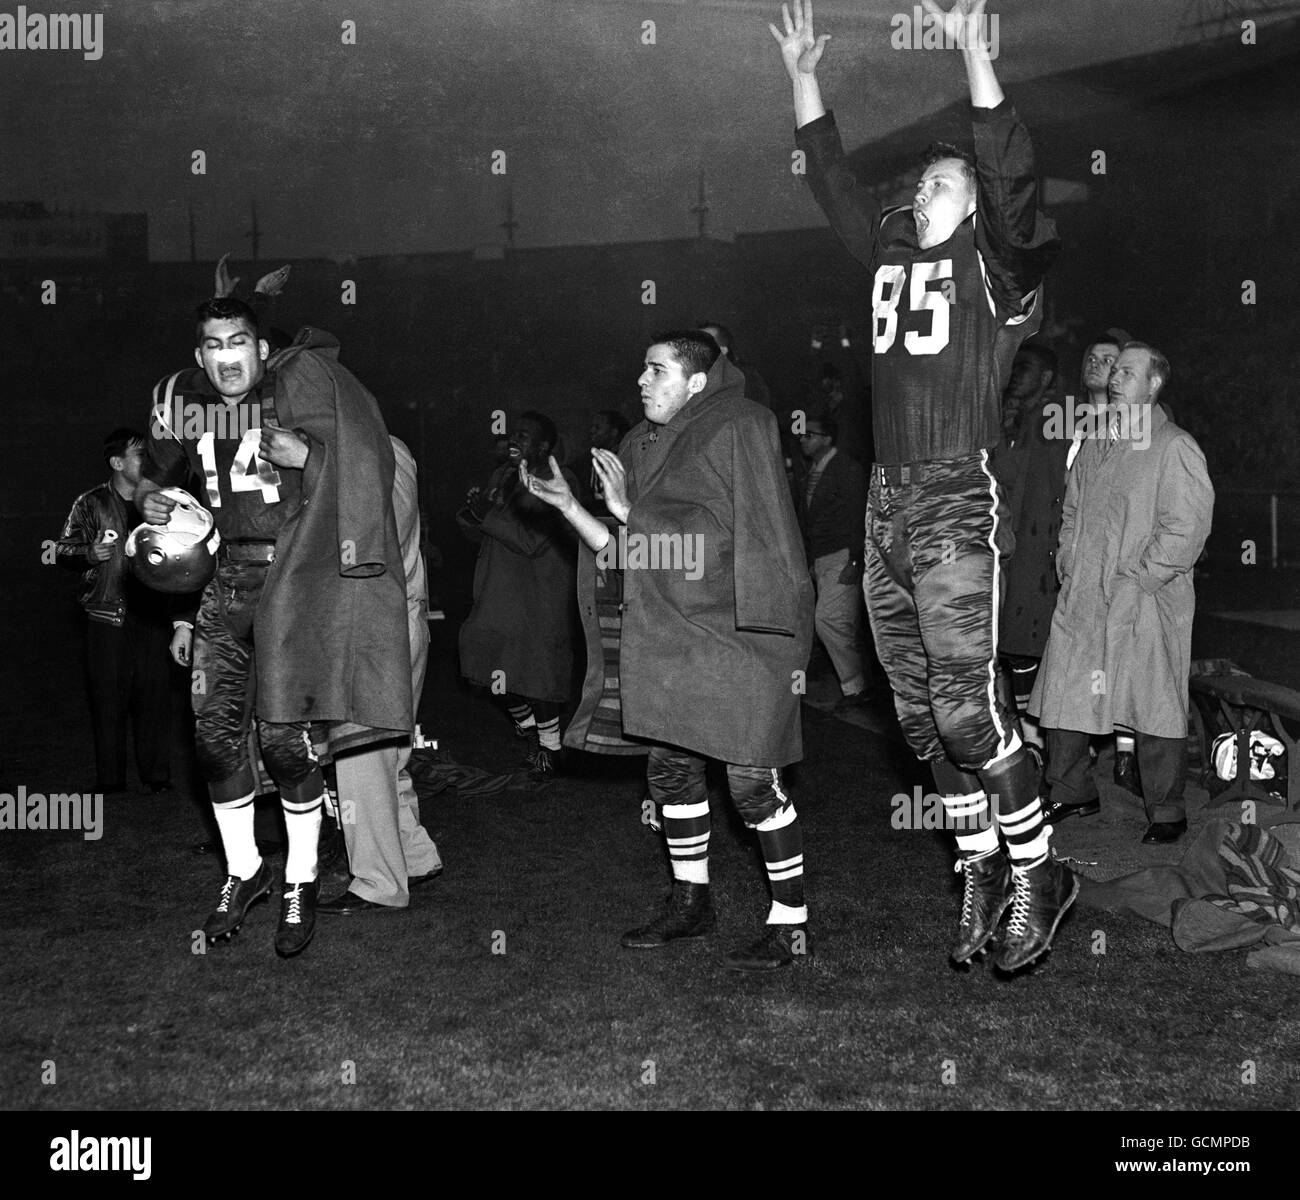 Les joueurs de London Rocket jubilant expriment leur joie alors que leur équipe se classe au stade de Wembley dans la finale du championnat de football 1956 des forces aériennes américaines en Europe entre les London Rockets et les Wiesbaden Flyers. Banque D'Images